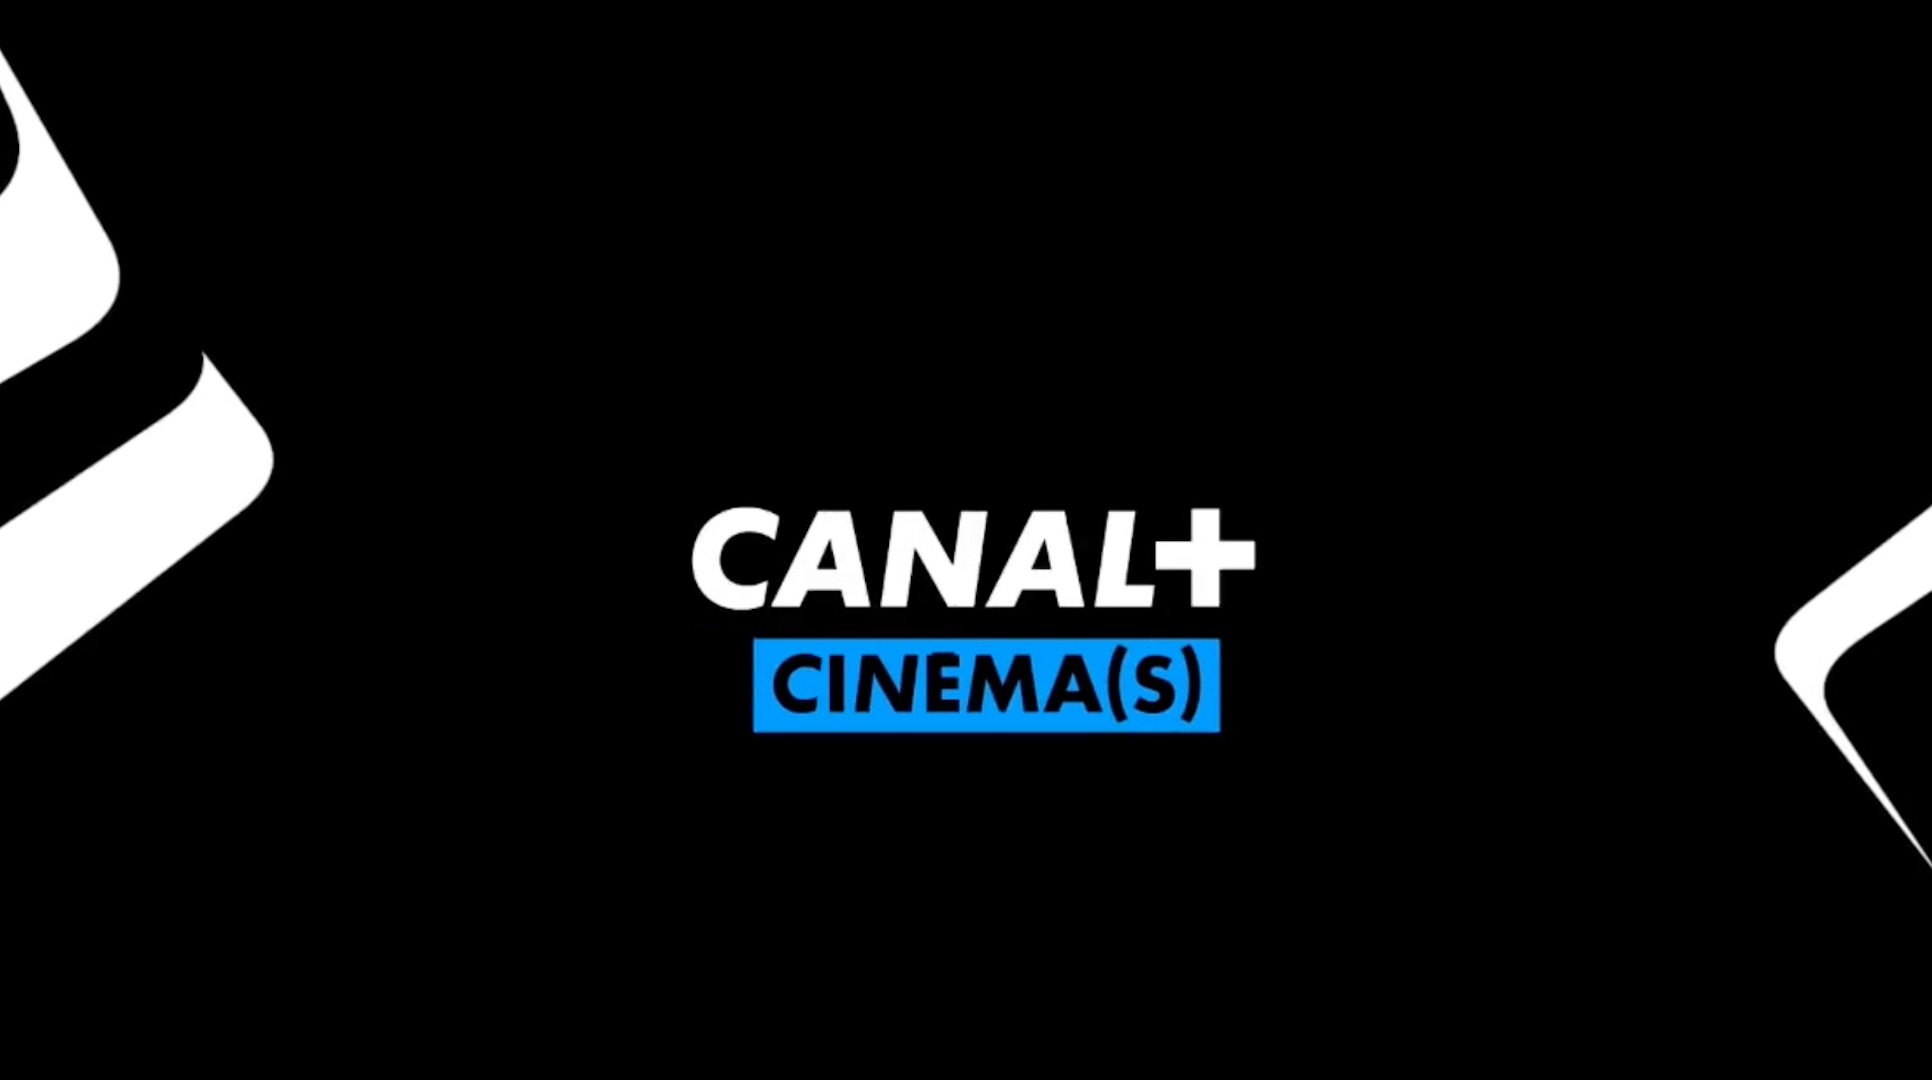 Canal+ Cinéma(s)